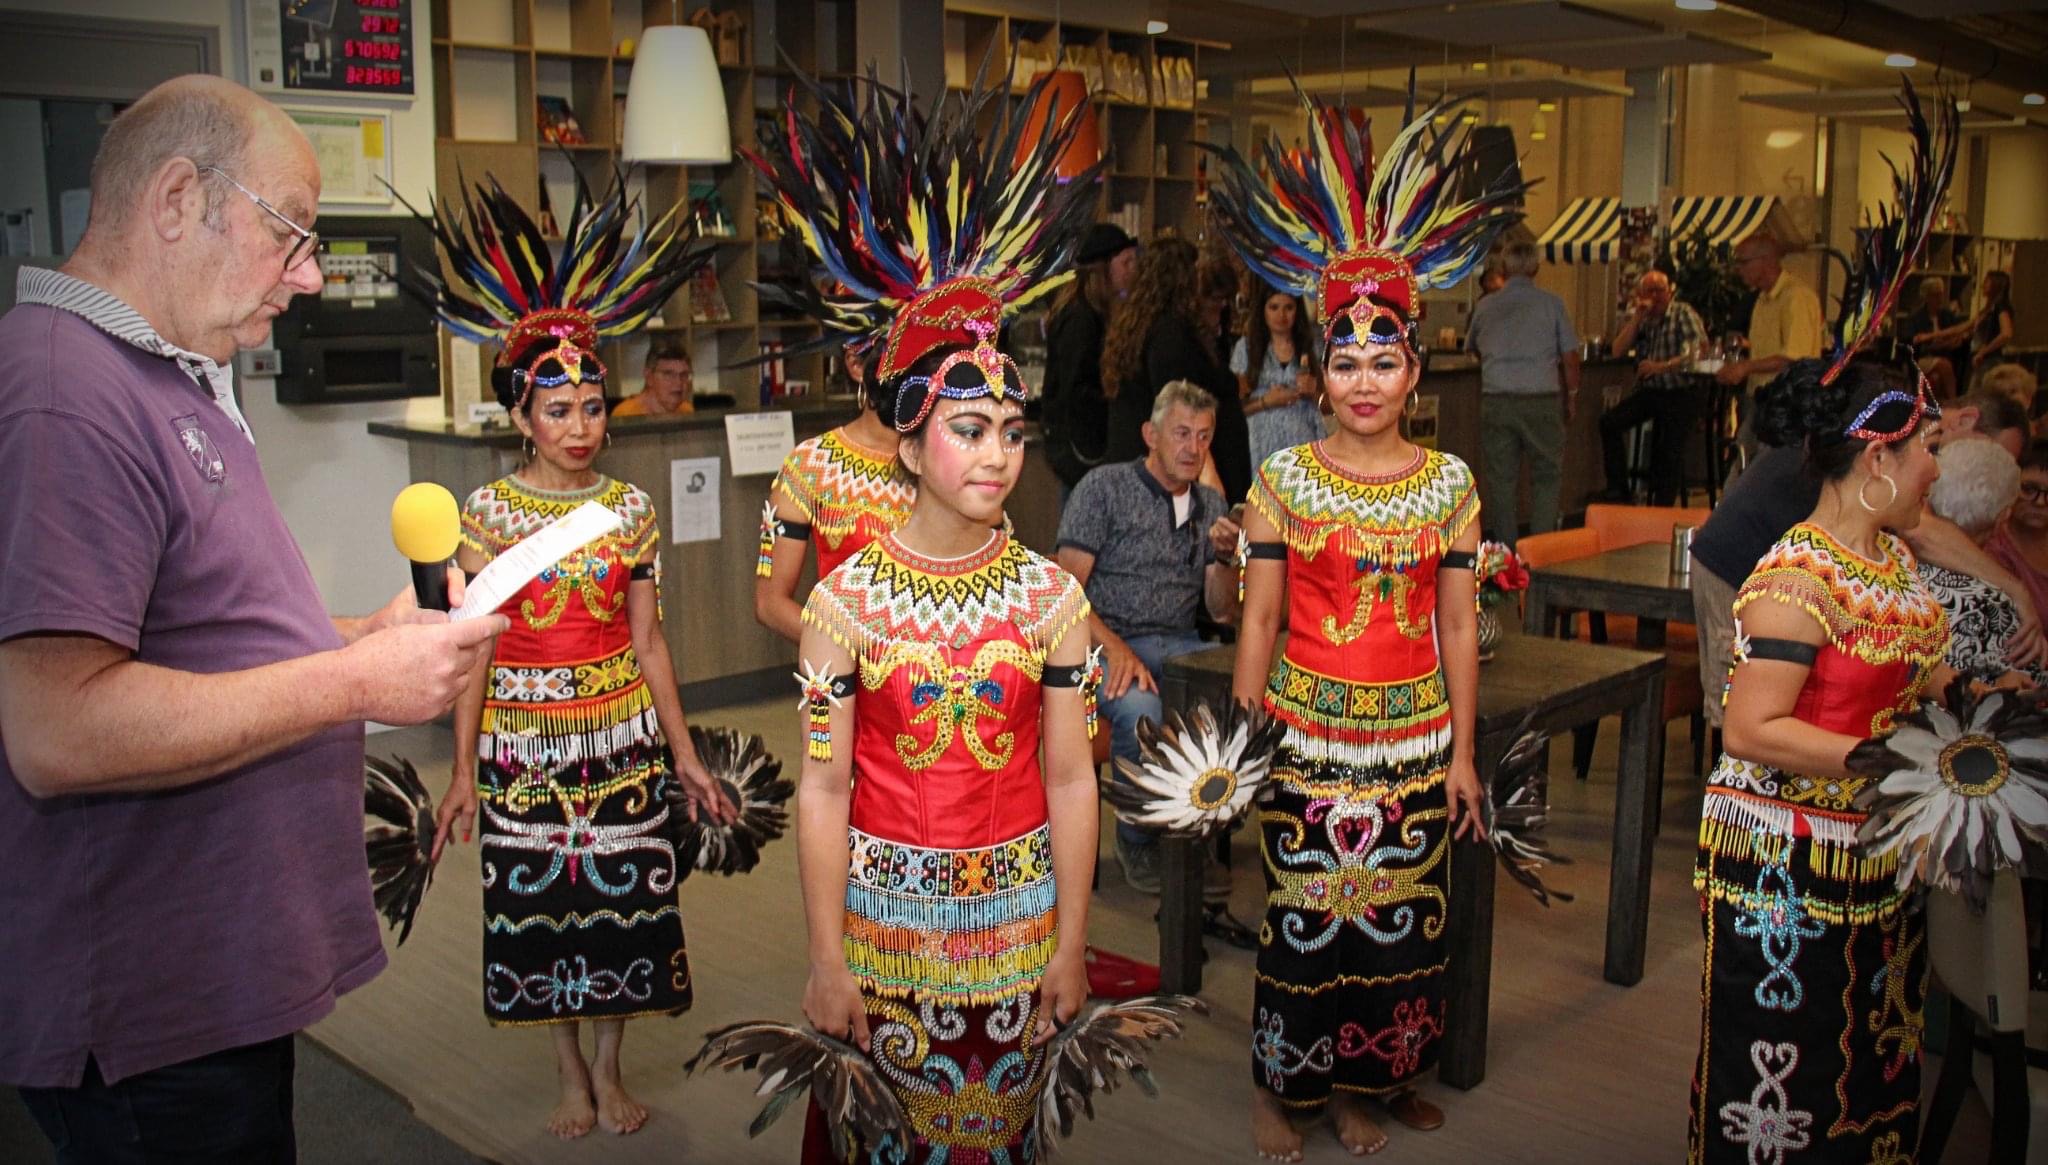 Proef de Buurt multicultureel samen samenwerken spelen danse Indonesisch mooi dans dansgroep MuzeRijk Uden gemeente Maashorst buurtfeest radio NosTos